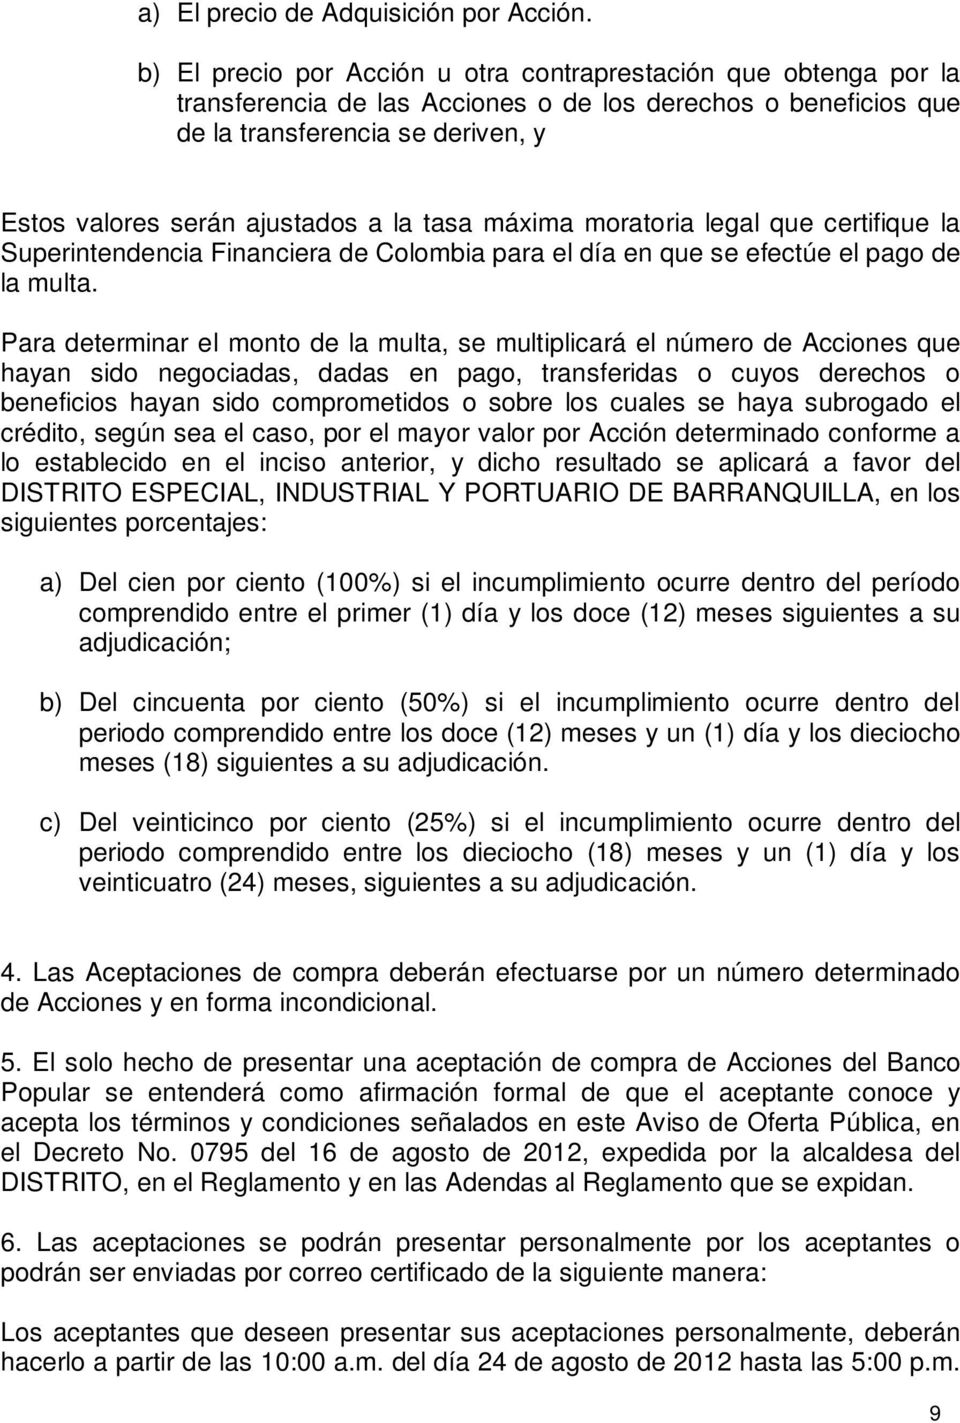 la tasa máxima moratoria legal que certifique la Superintendencia Financiera de Colombia para el día en que se efectúe el pago de la multa.